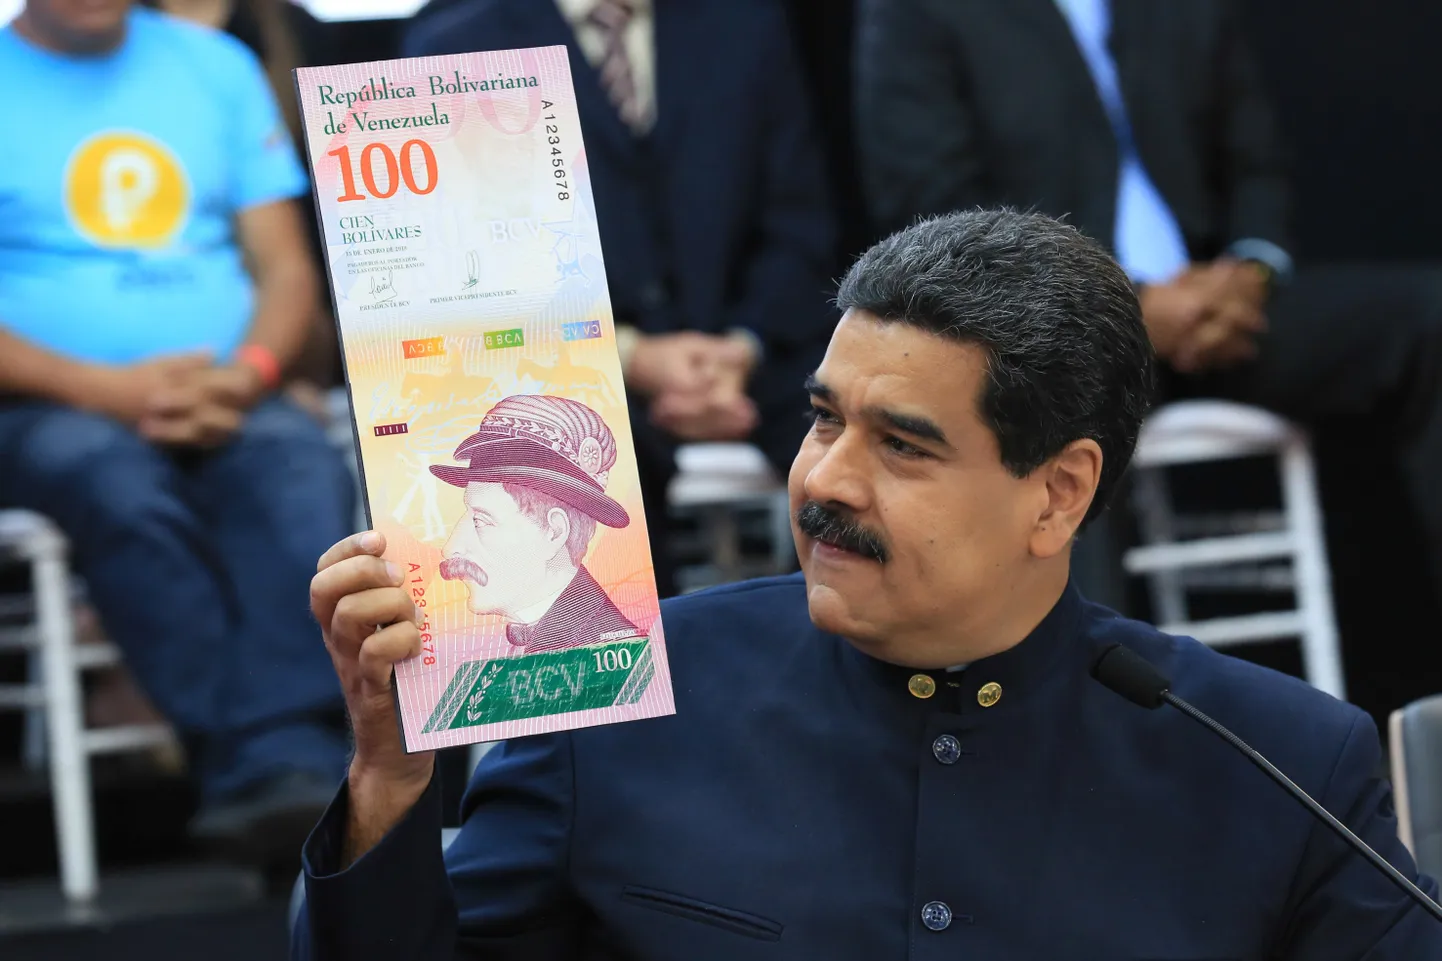 Venezuela president Nicolas Maduro uut sajalist käes hoidmas.